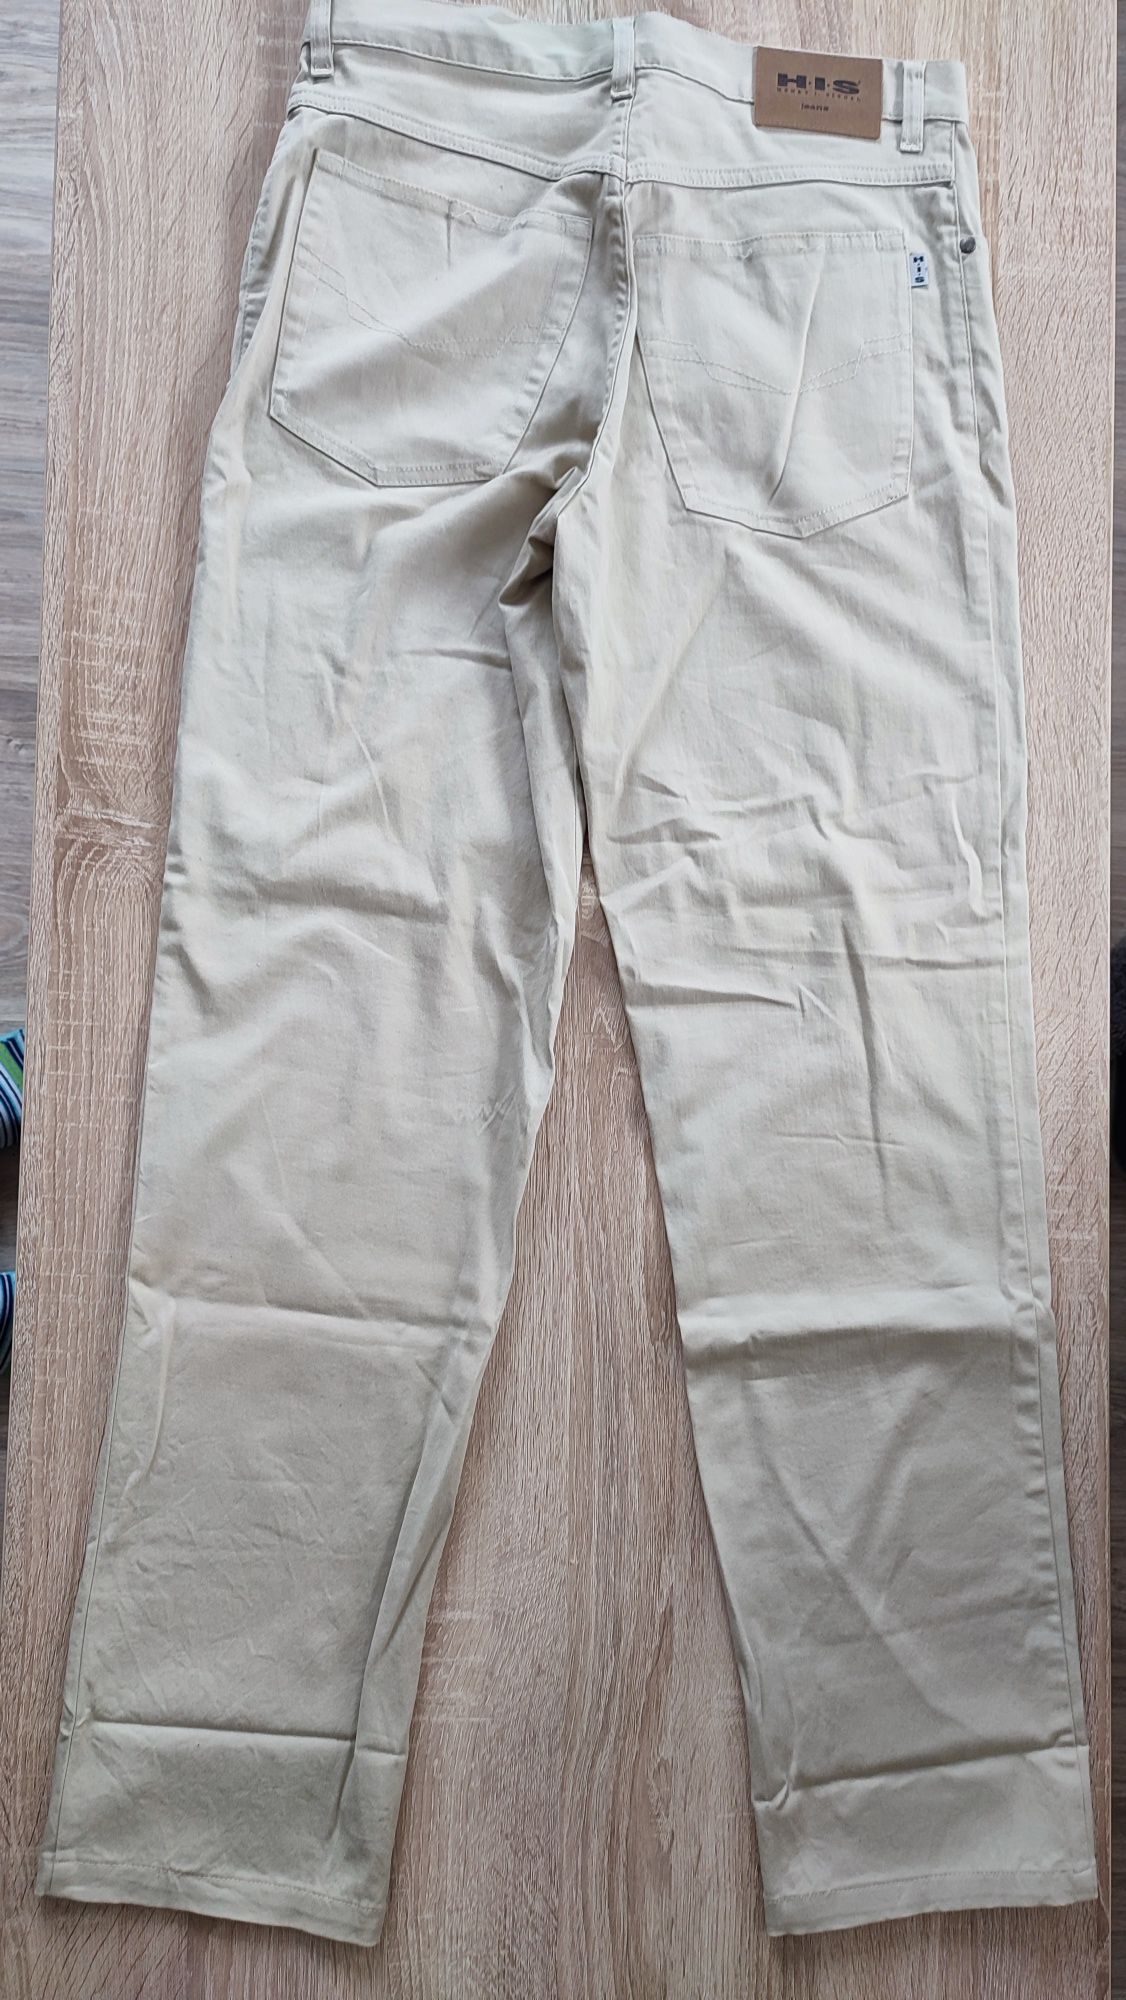 Spodnie długie beżowe męskie rozmiar 32-34